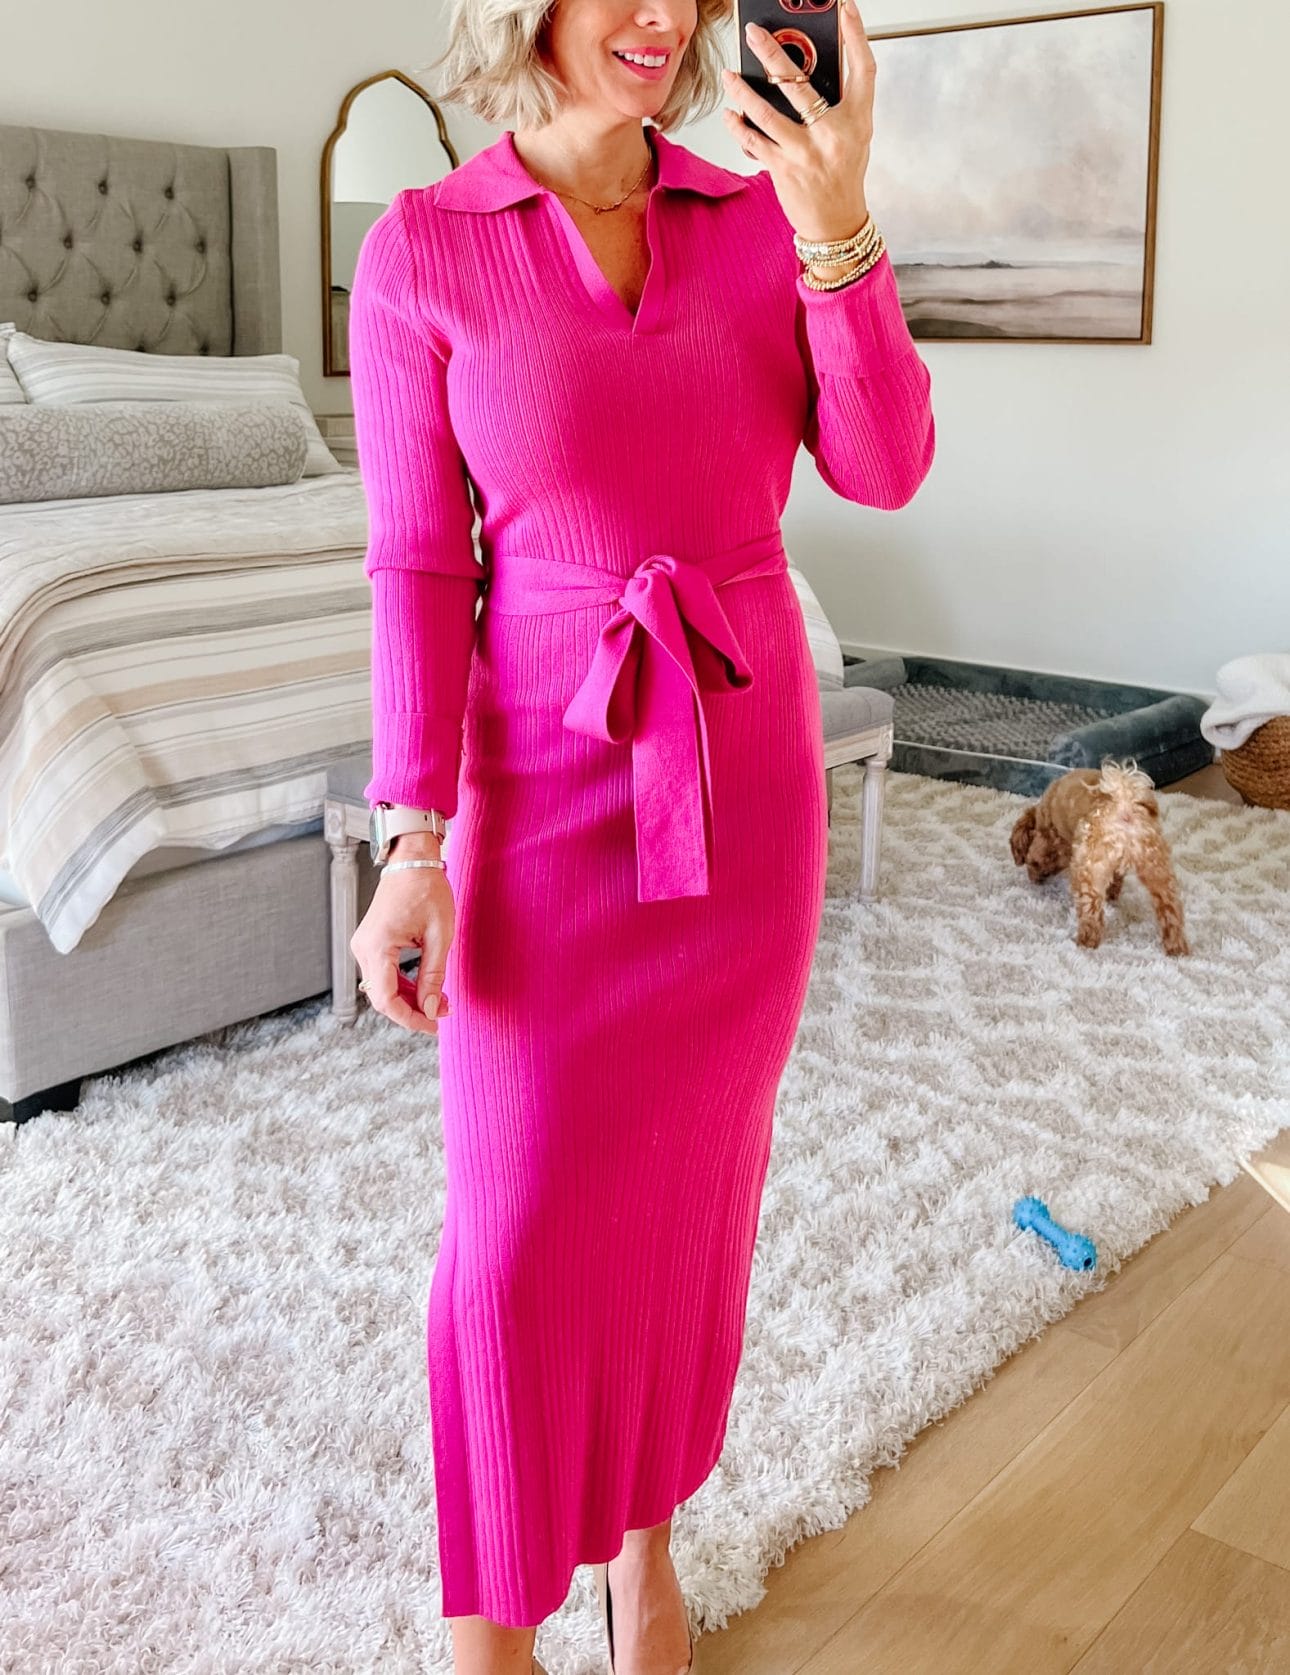 Pink Collard dress, heels 